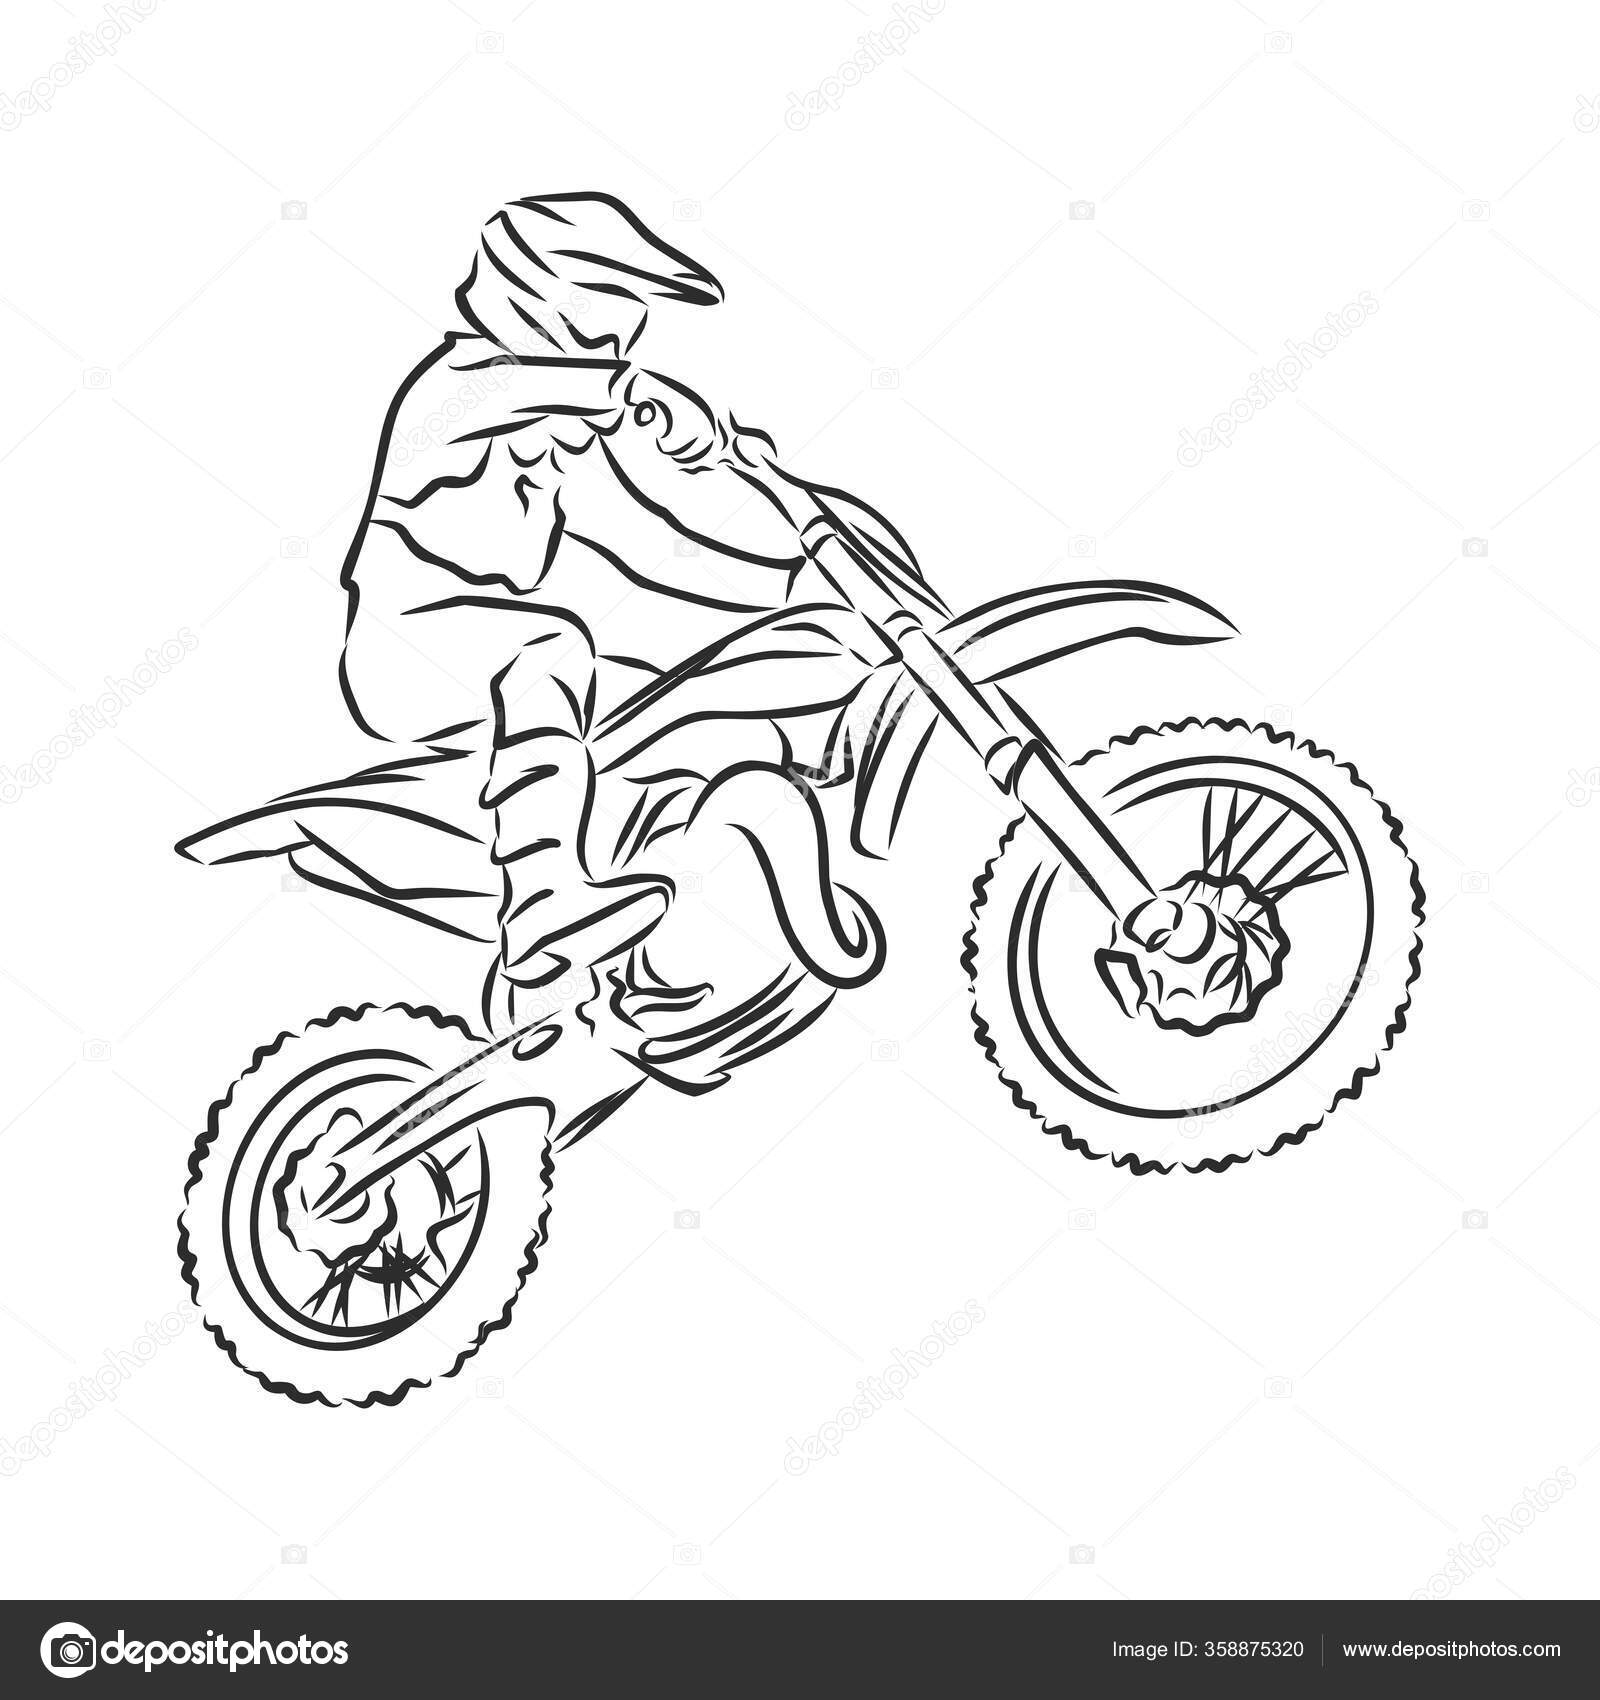 HOW TO DRAW A MOTORCYCLE - COMO DESENHAR UMA MOTO 